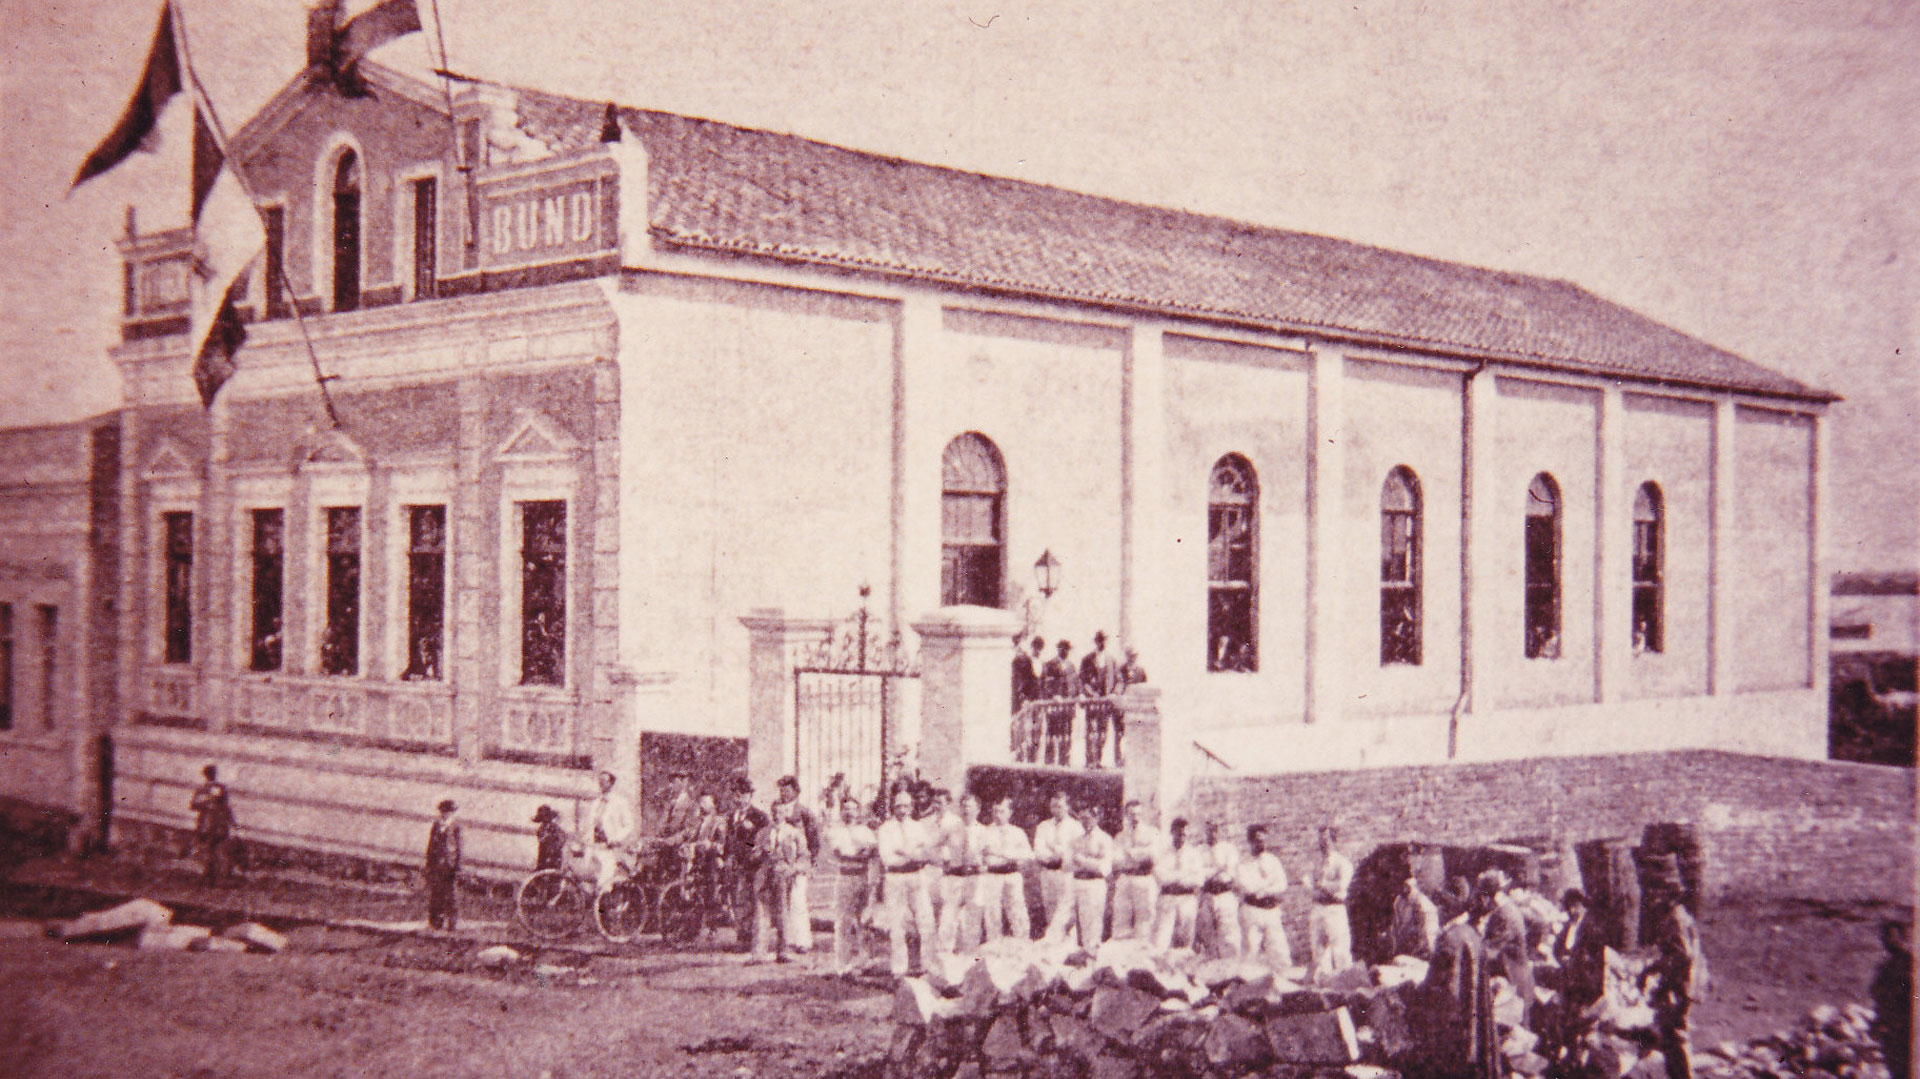 Turnhalle in Porto Alegre 1896 | Bildquelle: Archiv Sopiga